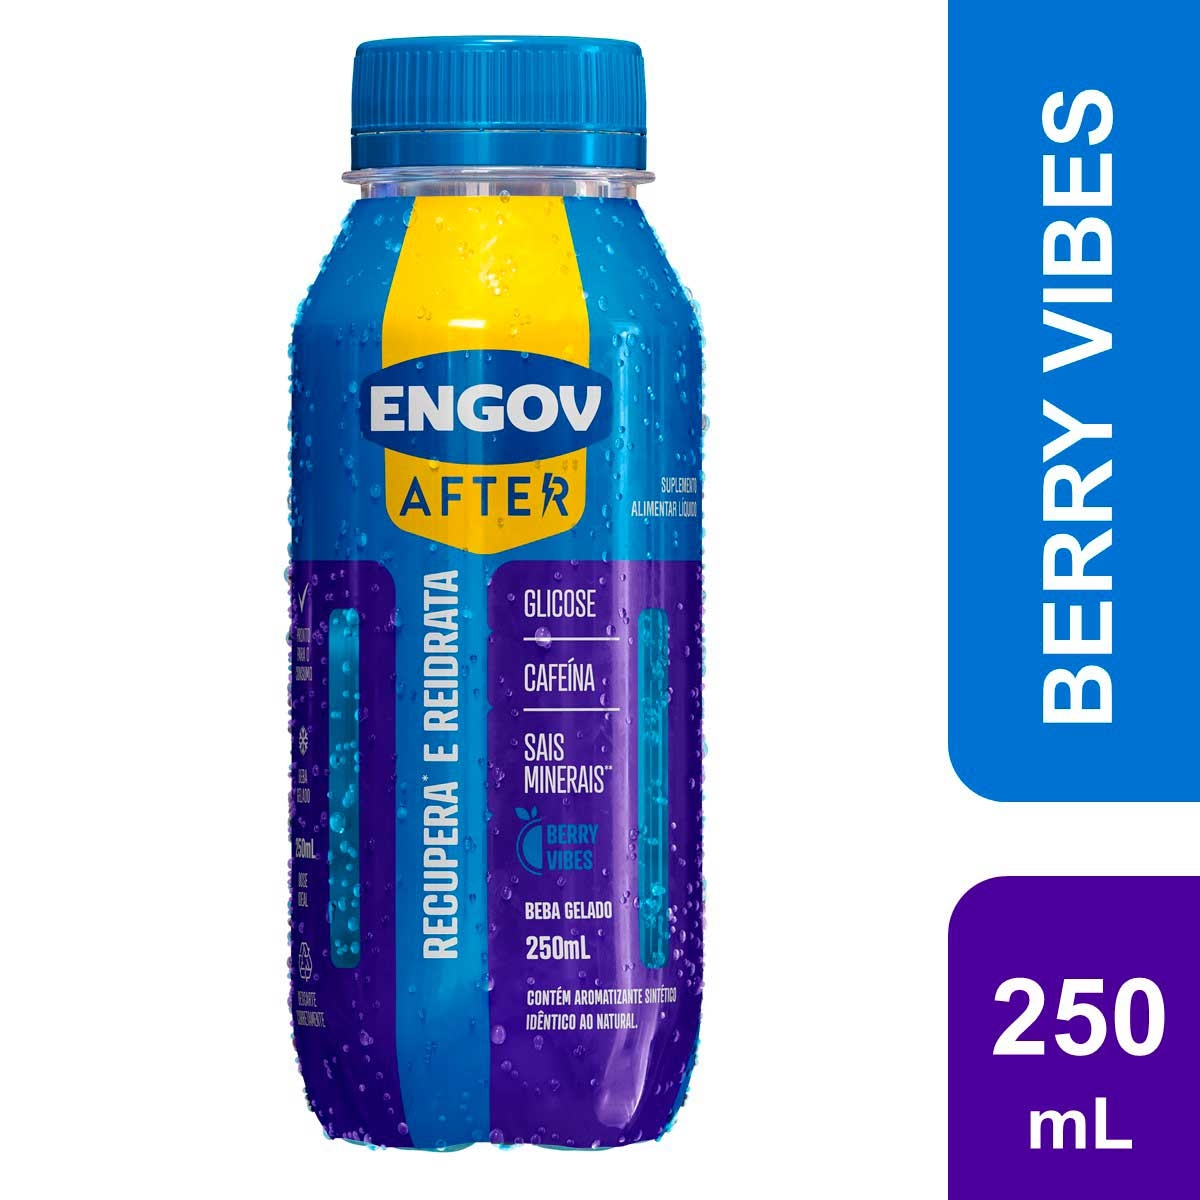 Engov After Berry Vibes com 250ml